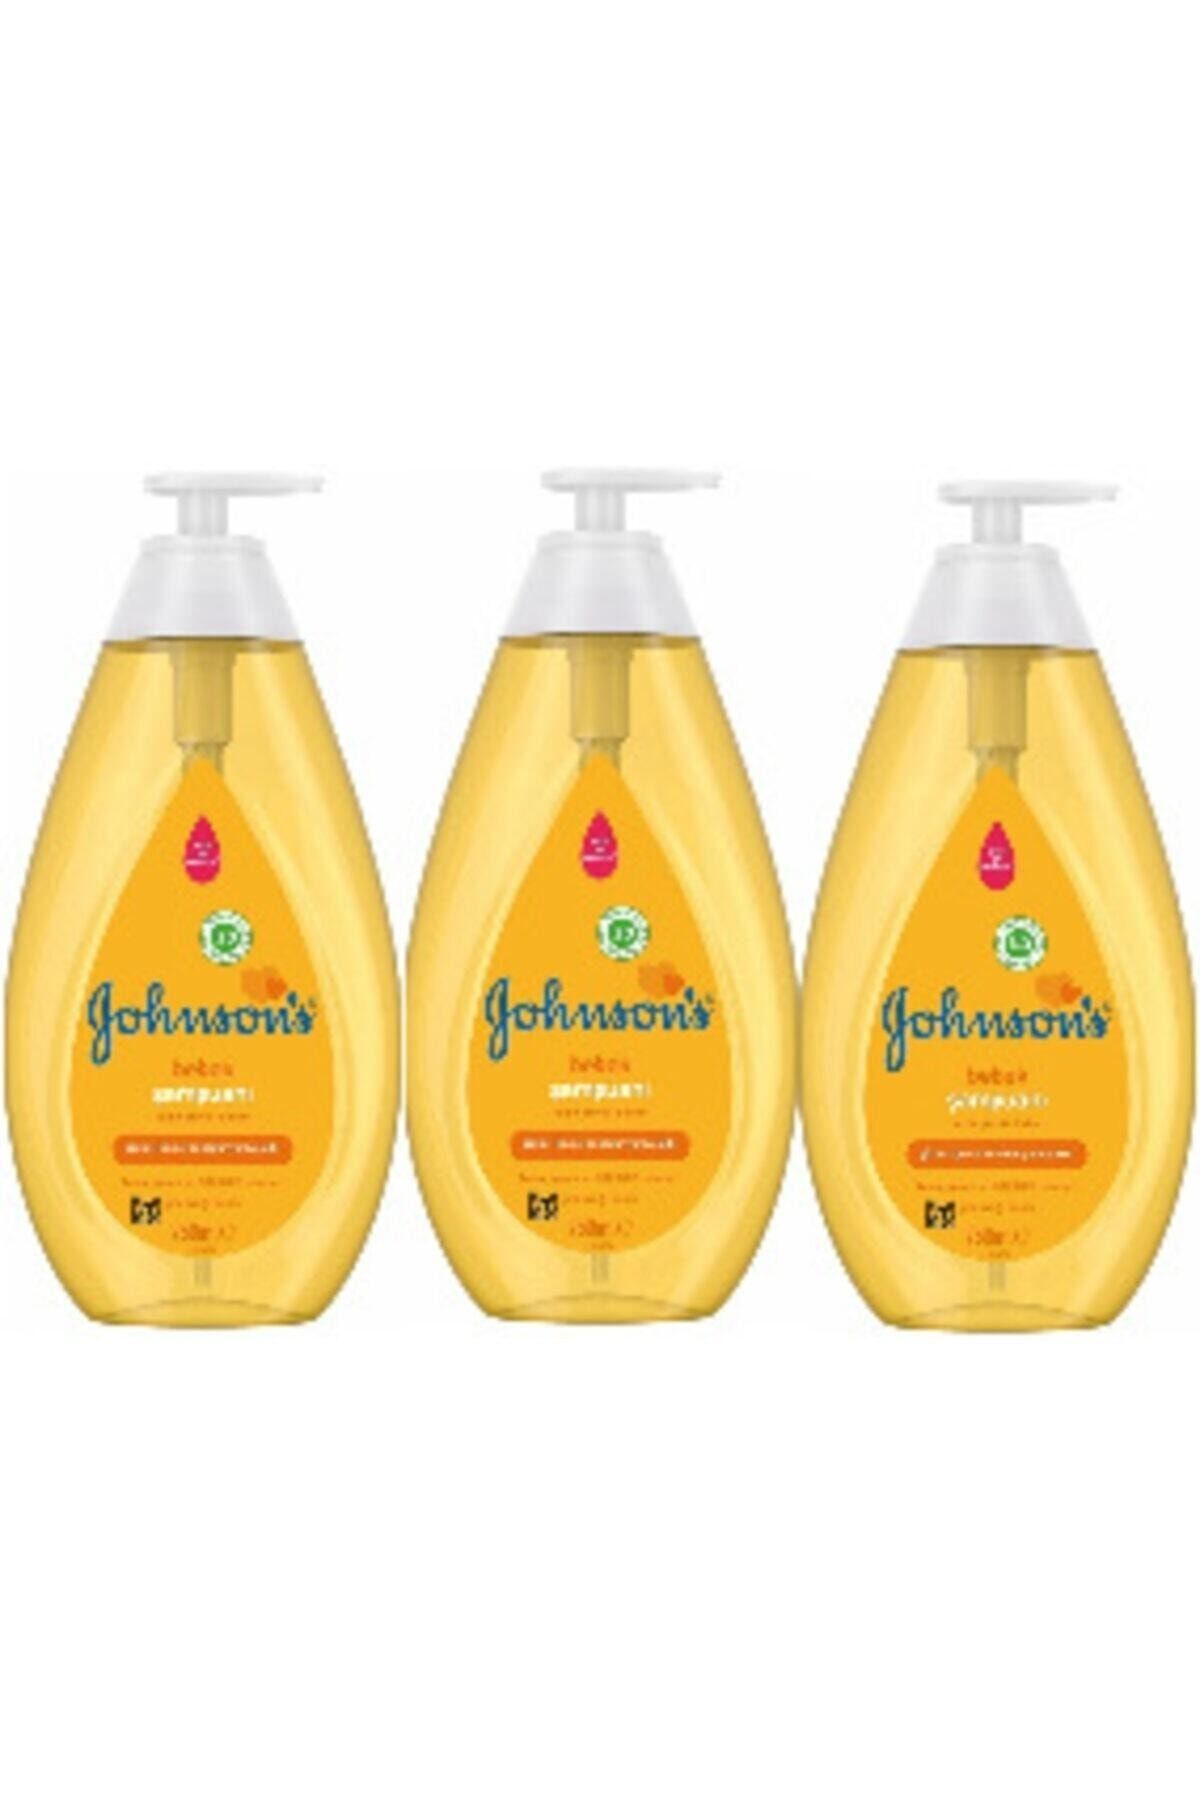 Johnson's Johnson Bebek Şampuanı 750 Ml ( 3 Adet )